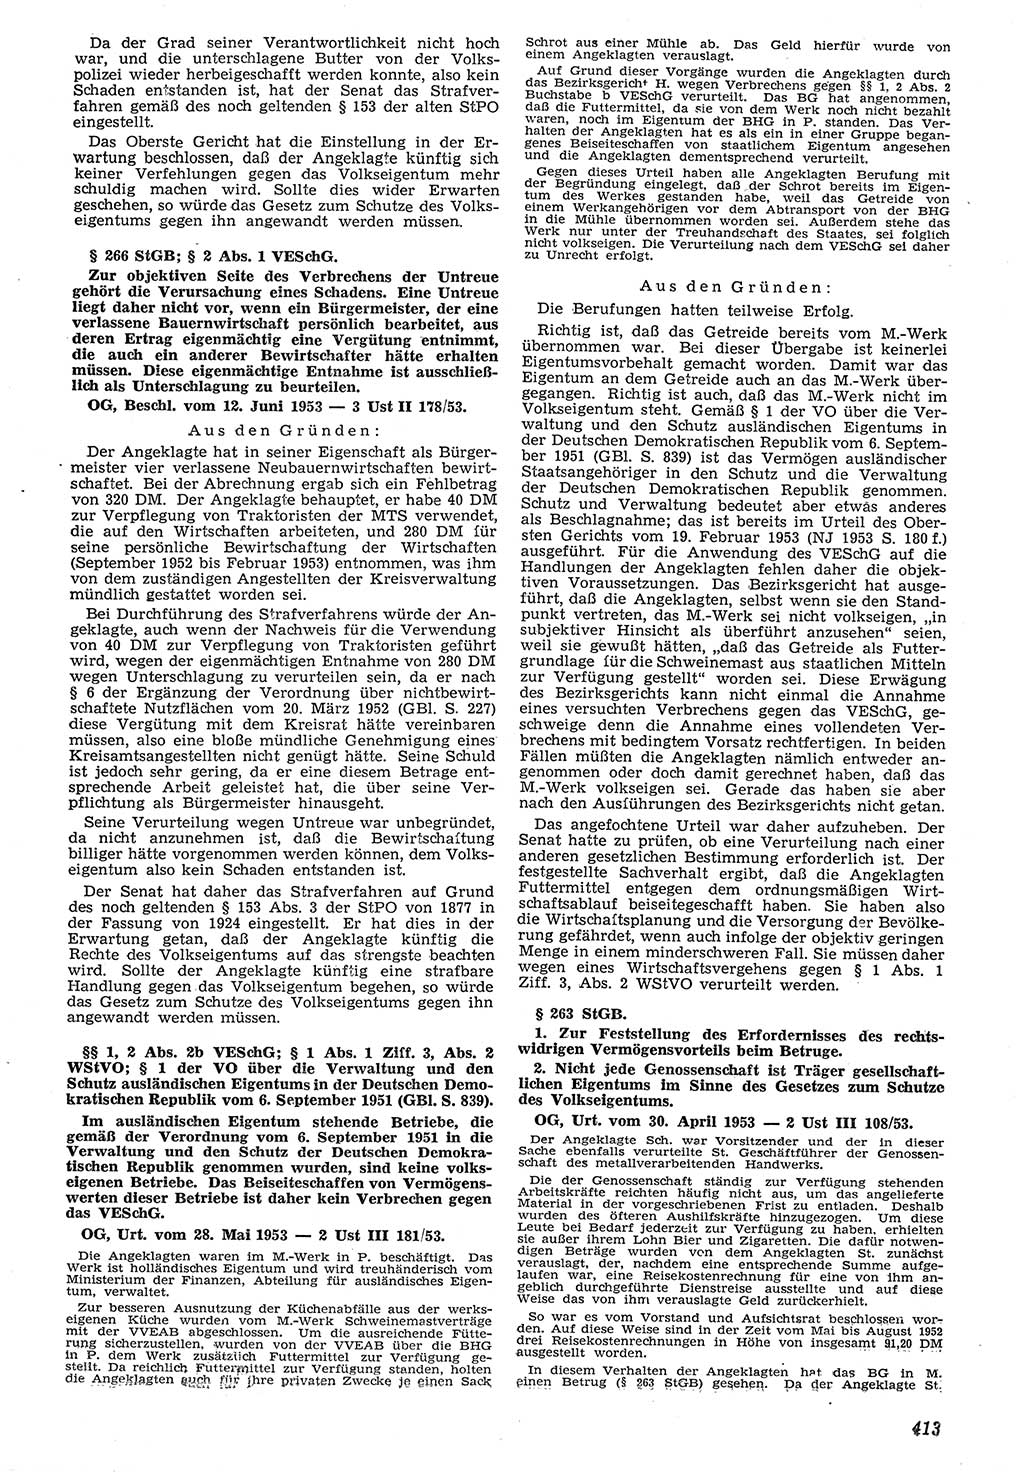 Neue Justiz (NJ), Zeitschrift für Recht und Rechtswissenschaft [Deutsche Demokratische Republik (DDR)], 7. Jahrgang 1953, Seite 413 (NJ DDR 1953, S. 413)